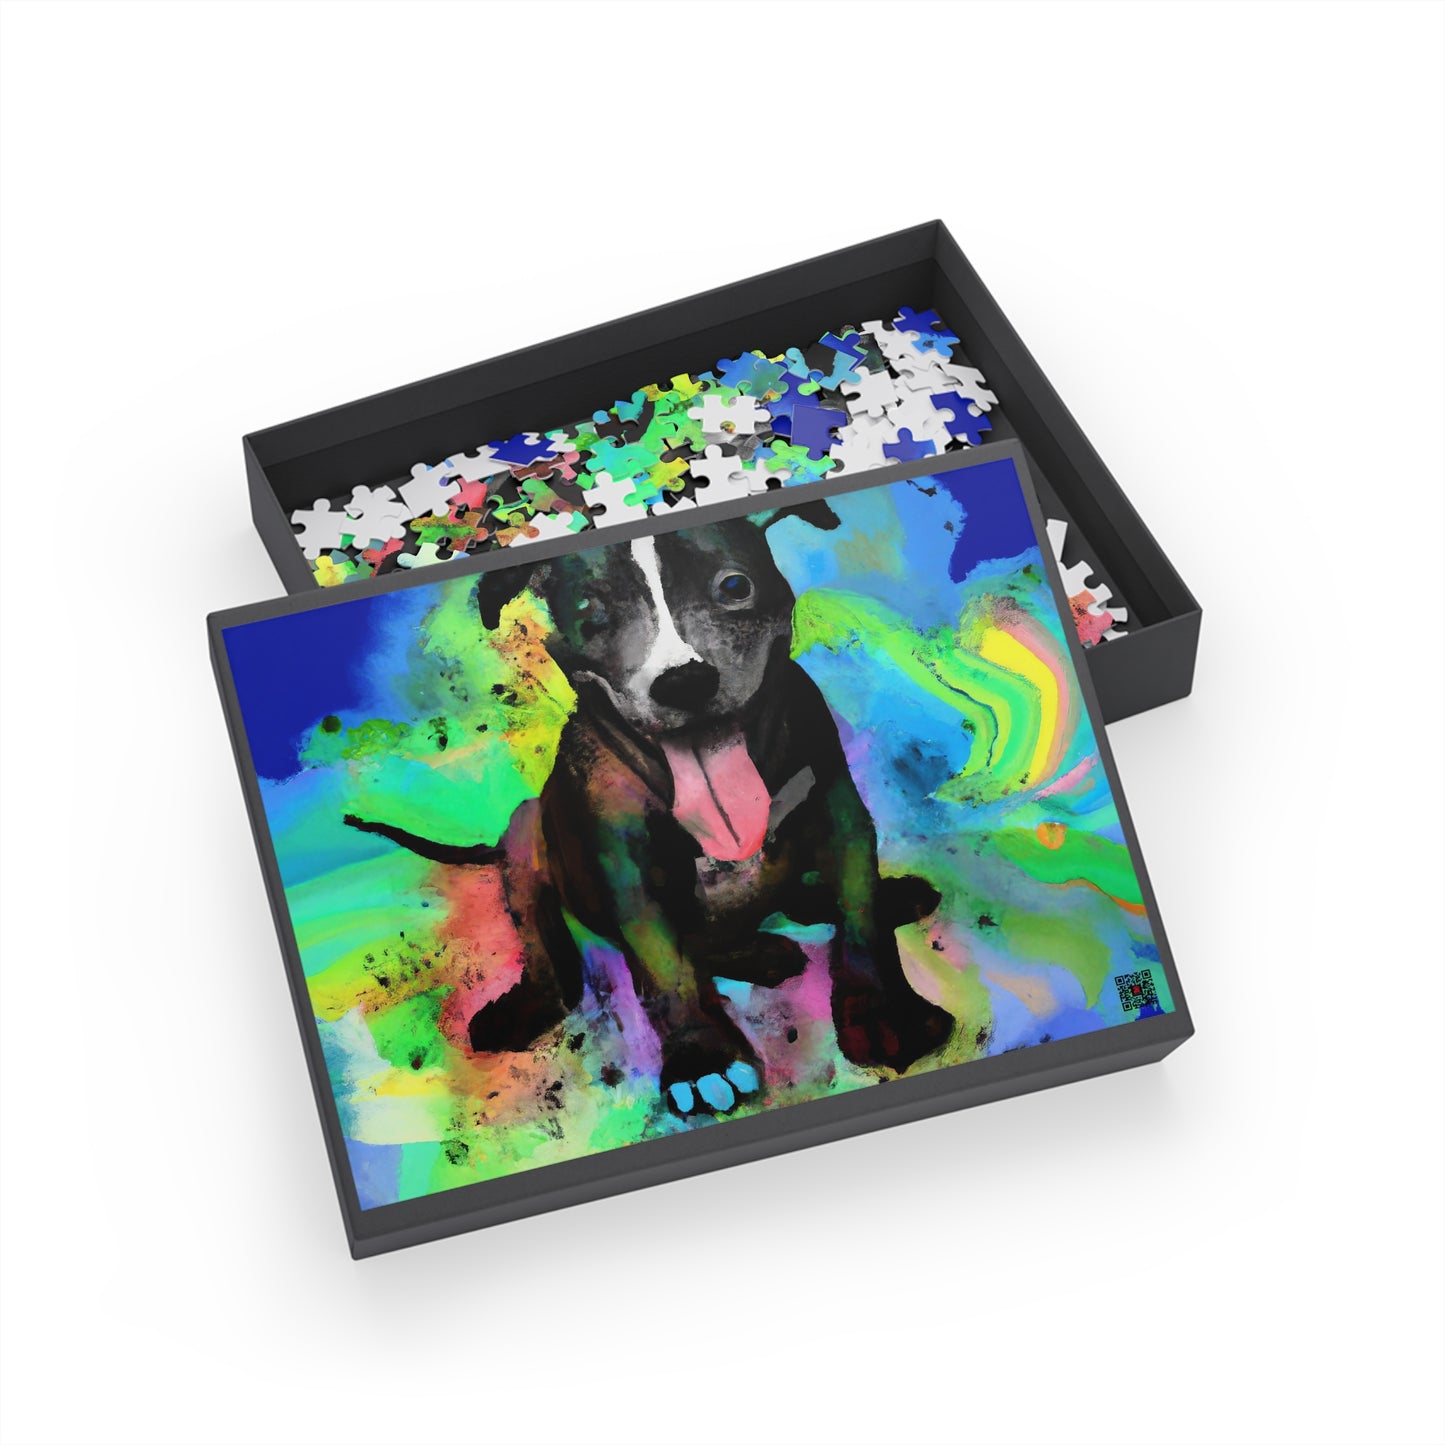 Isamon Emperius - Pitbull Puppy - Puzzle